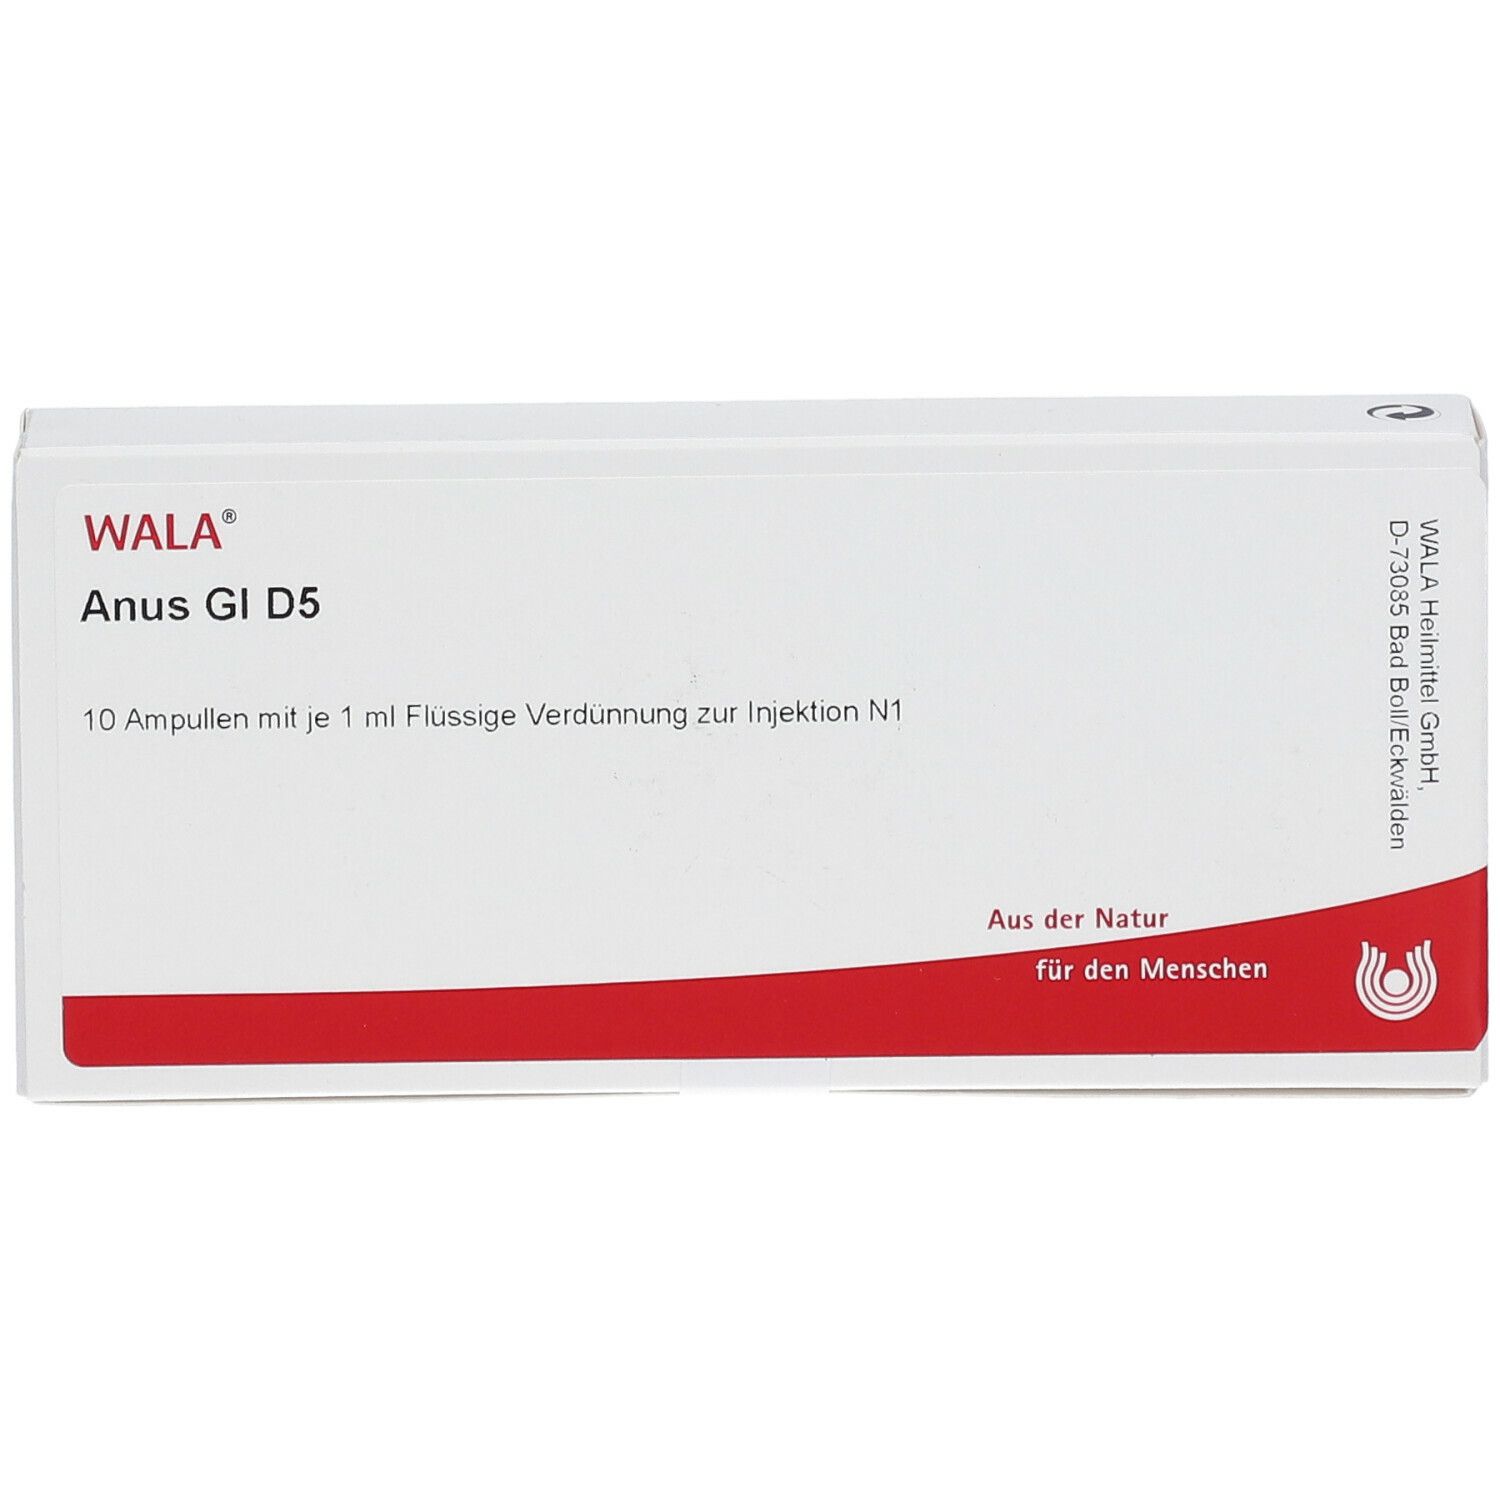 WALA® Anus Gl D 5